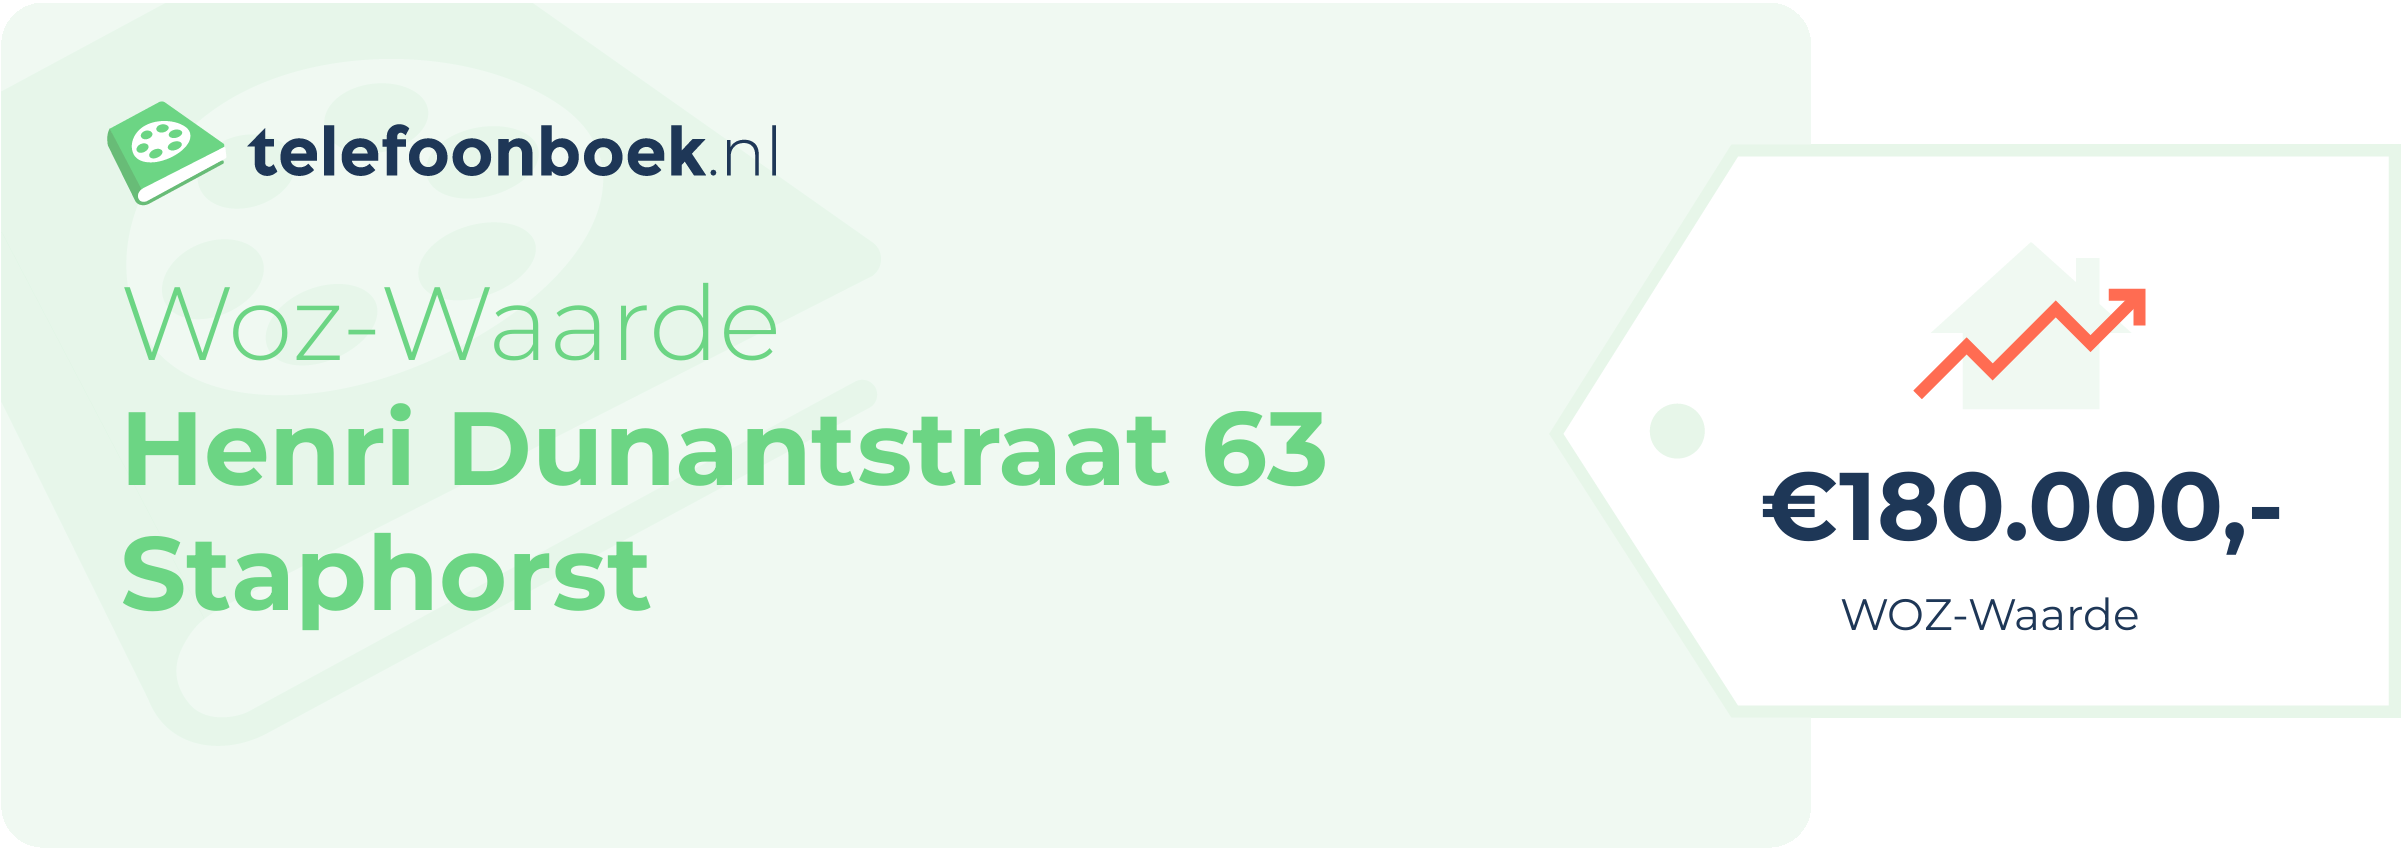 WOZ-waarde Henri Dunantstraat 63 Staphorst